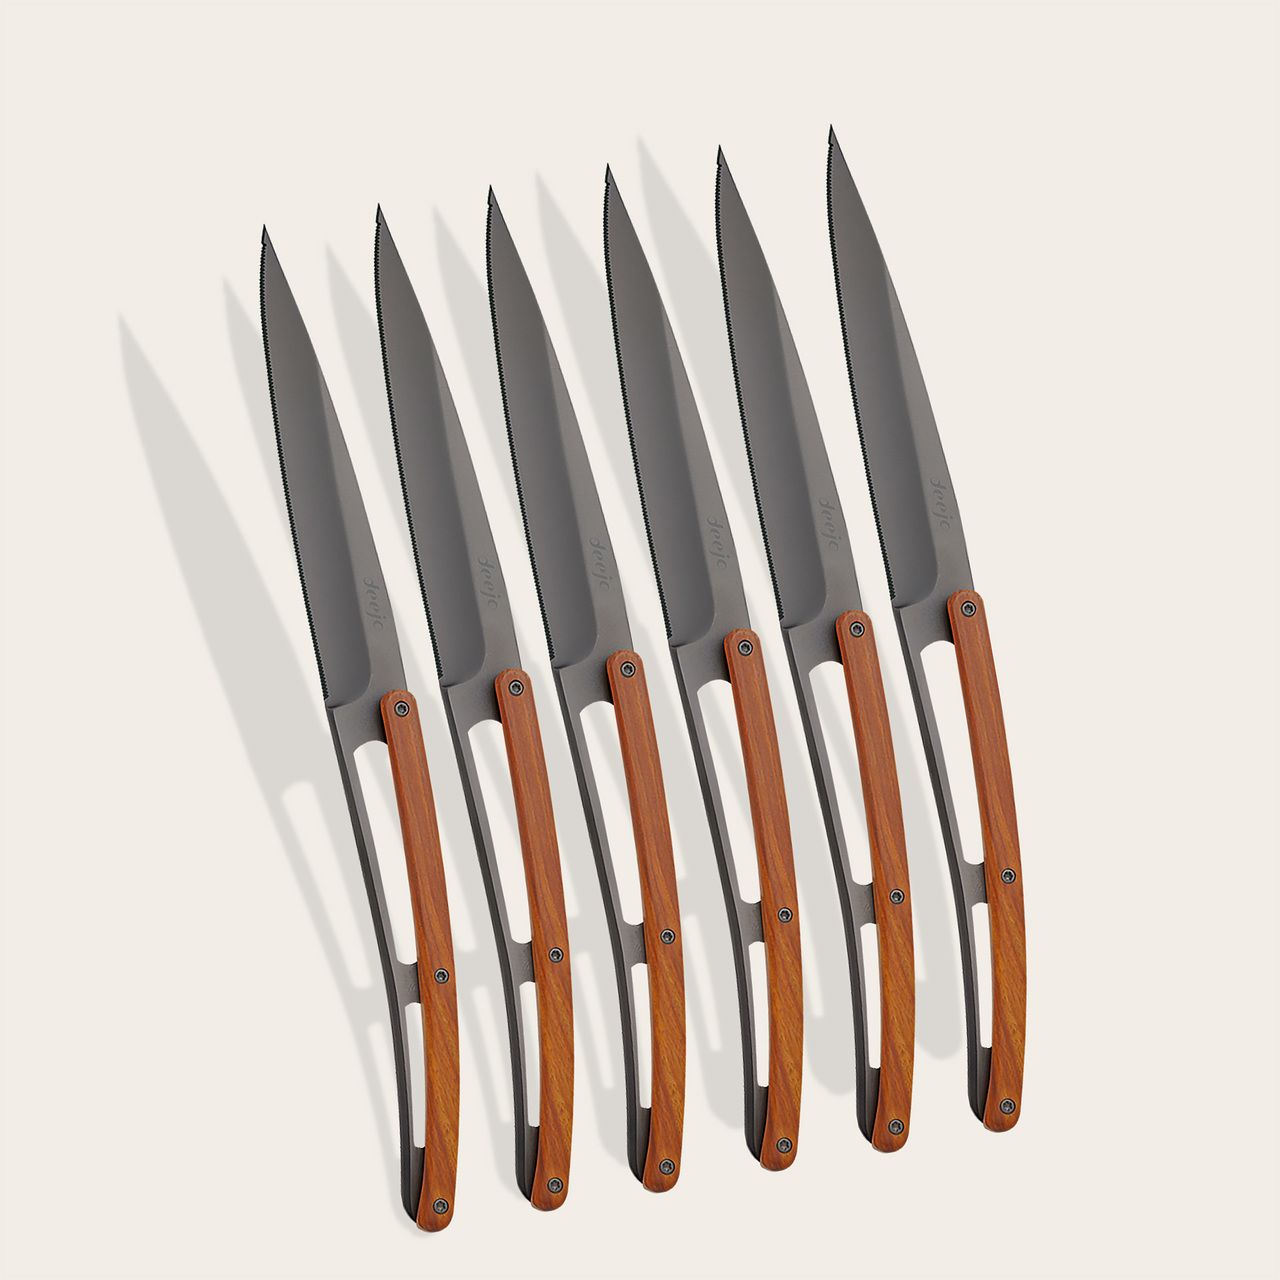 https://www.deejo.com/medias/produits/1506376336/22492_1280-6-deejo-steak-knives-serrated-coral-wood.jpg